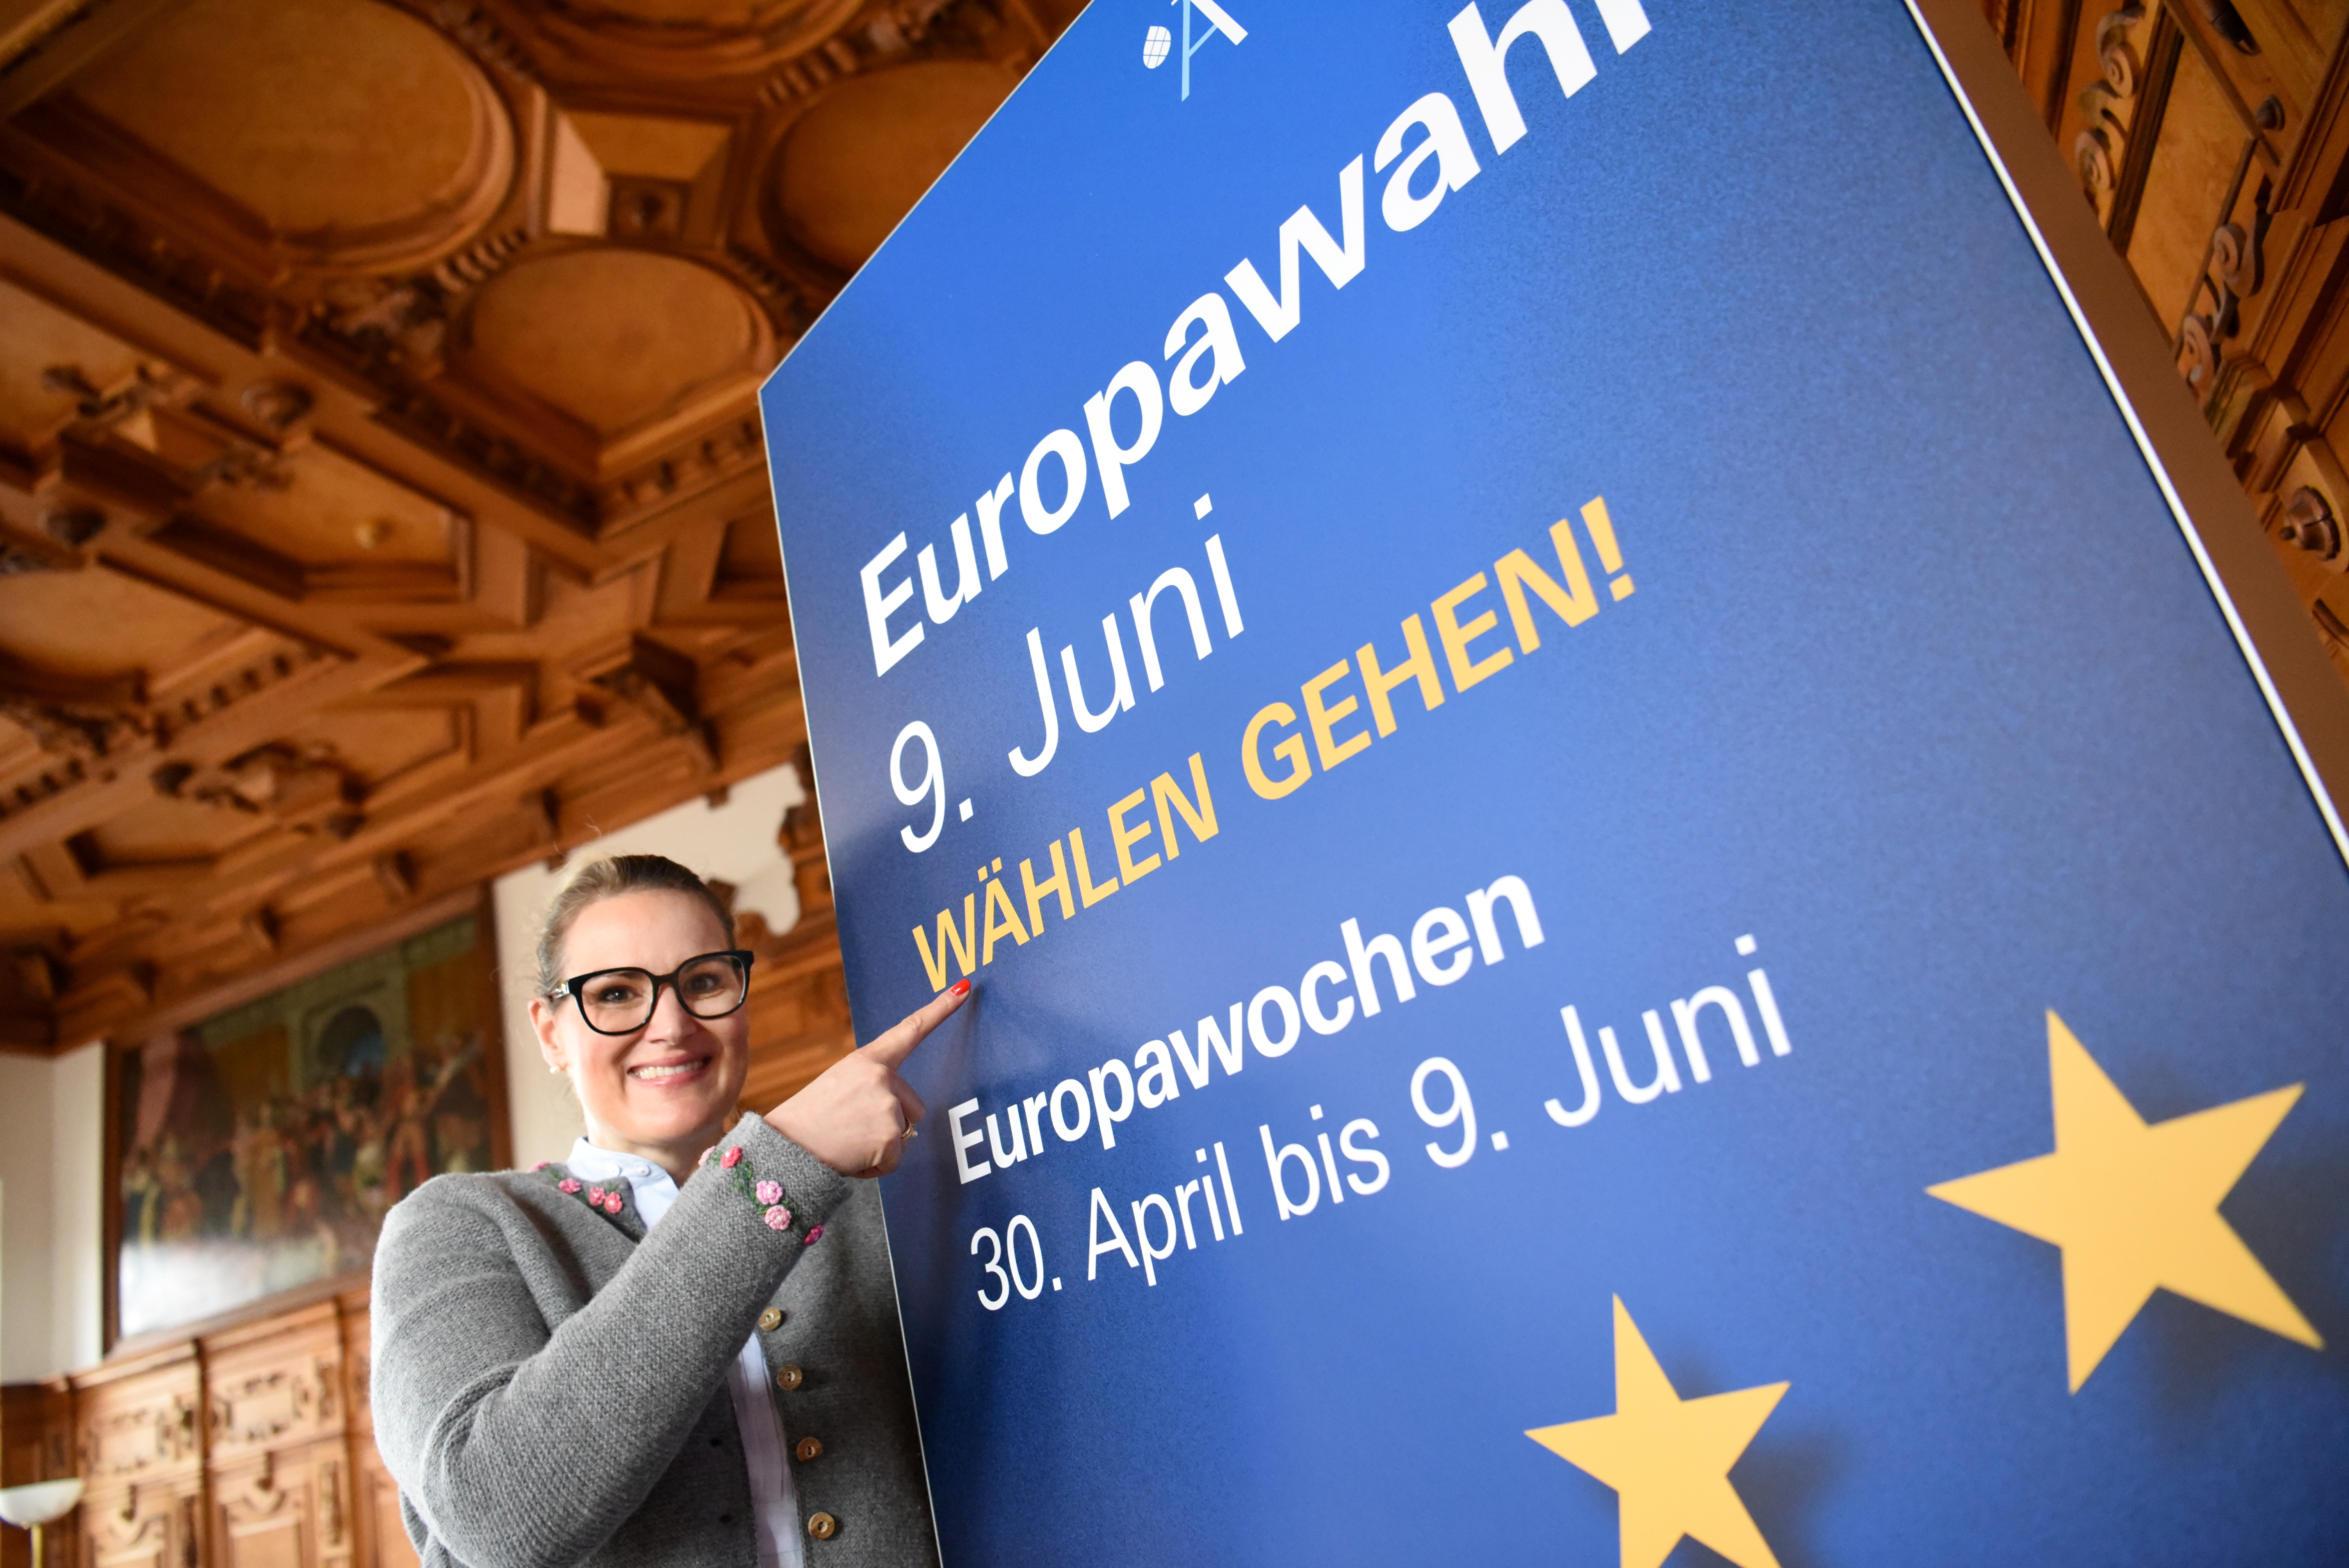 OB Eva Weber zeigt auf ein  Plakat, auf dem steht: "Europawahl 9. Juni, Wählen gehen! Europawochen 30. April bis 9. Juni